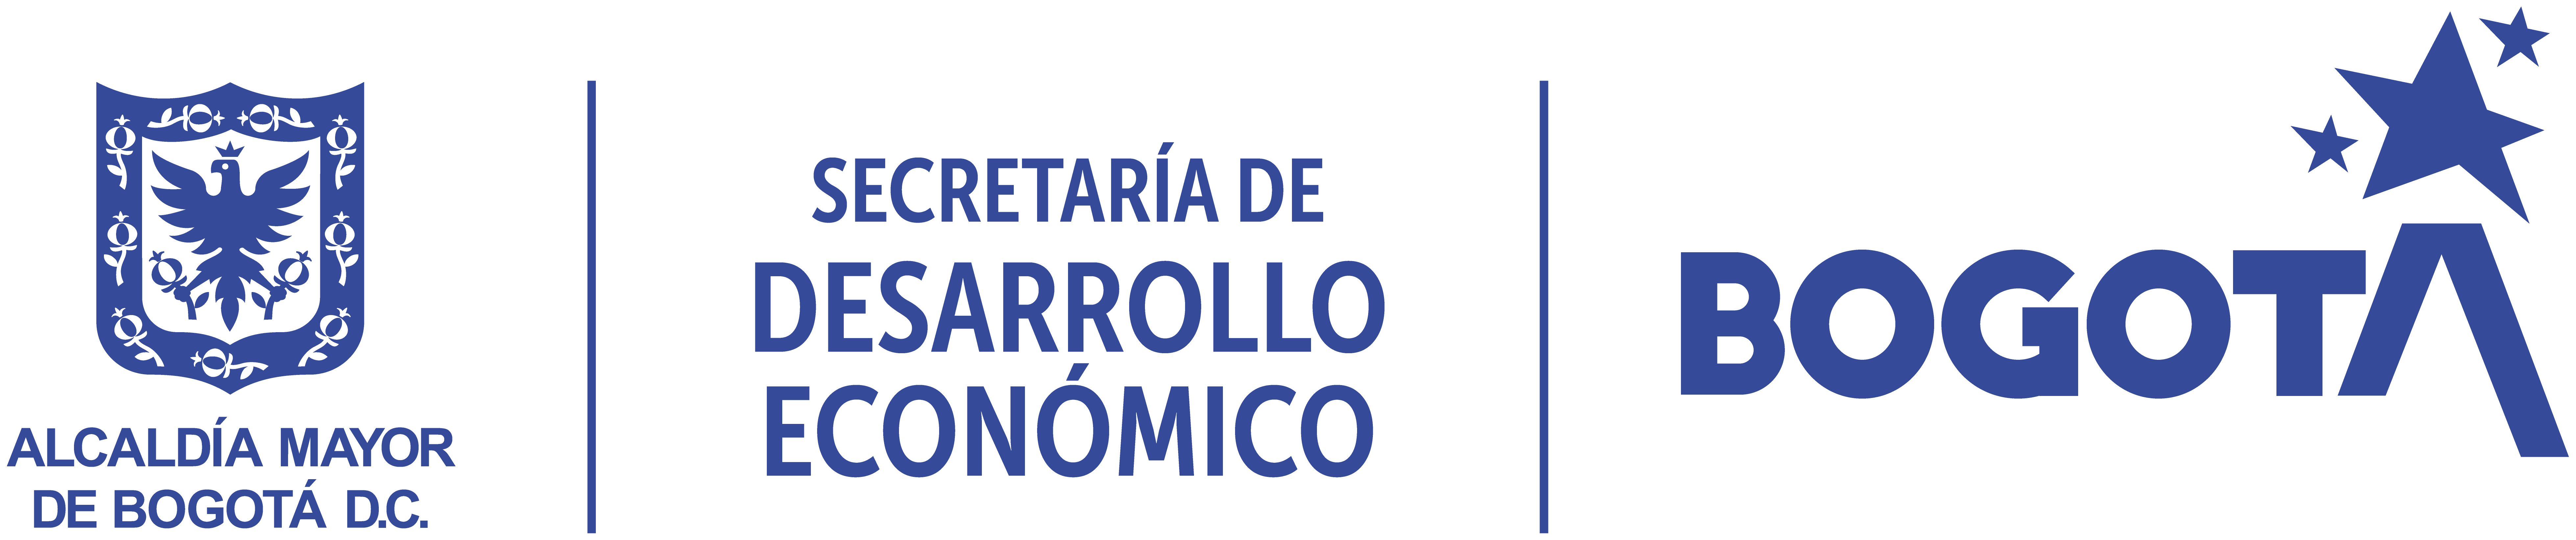 Logo de la Secretar�a de Desarrollo Económico